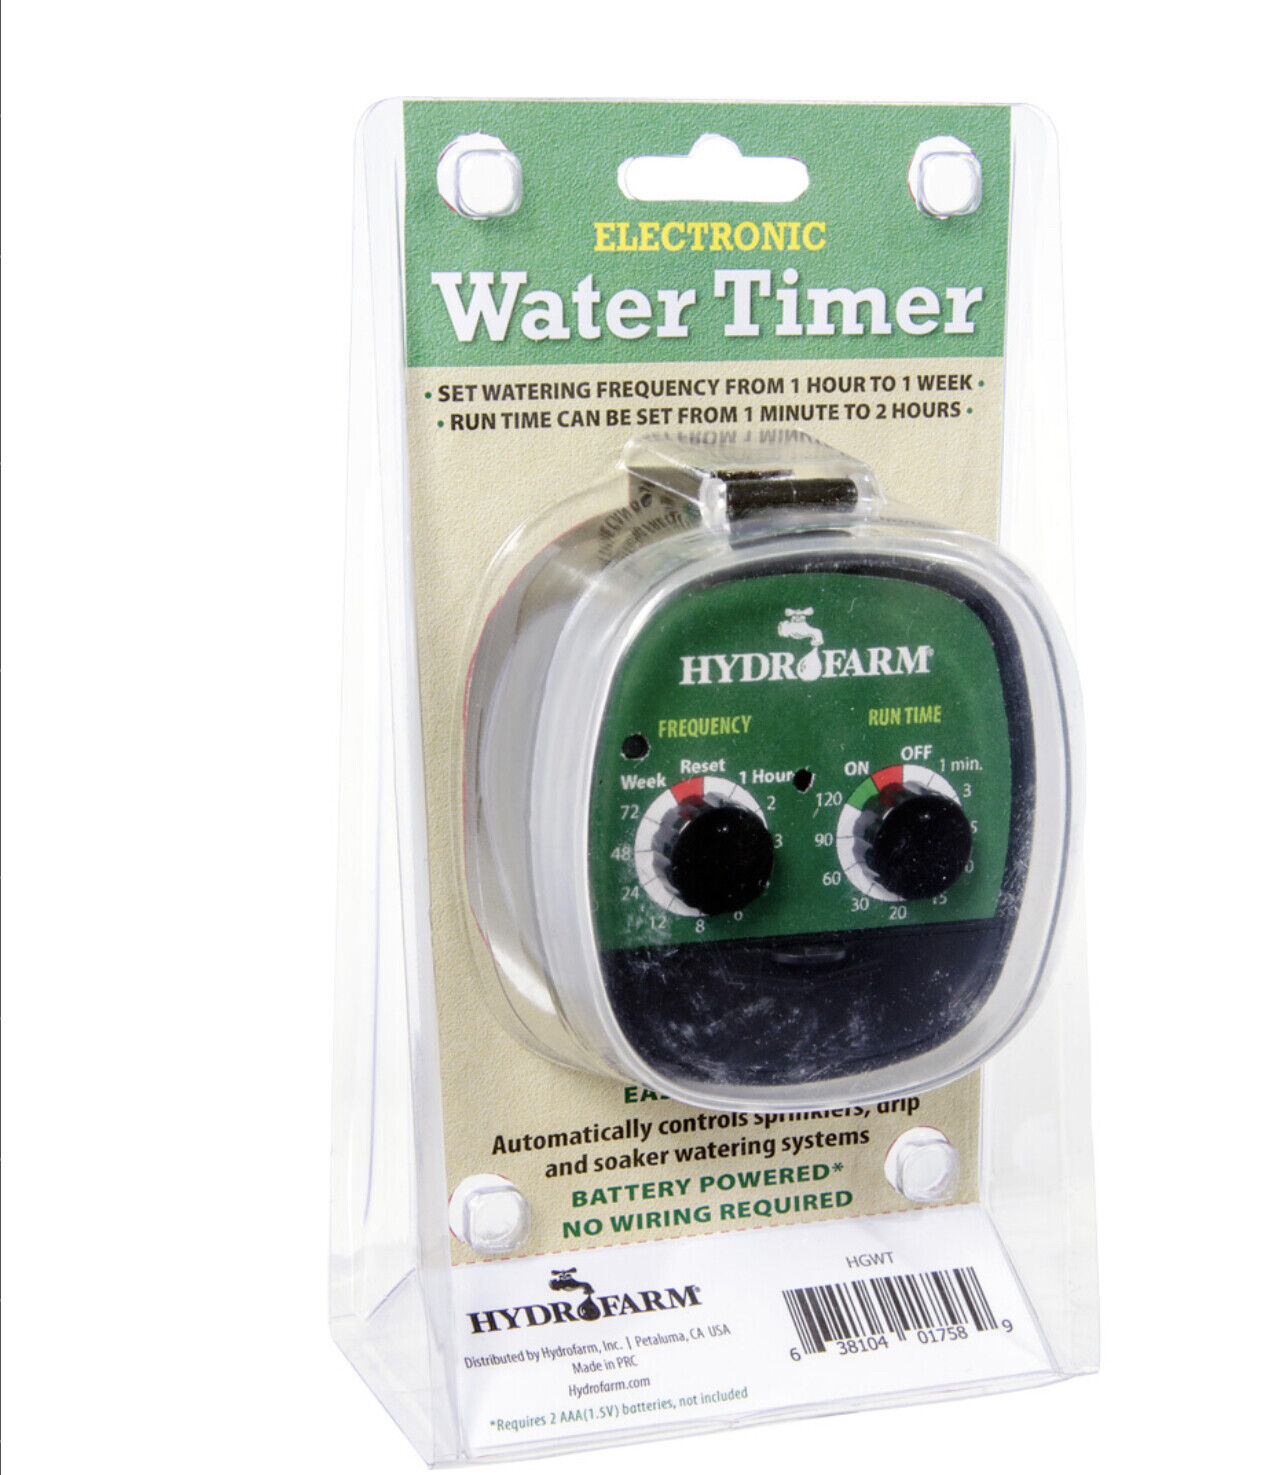 Hydrofarm water timer